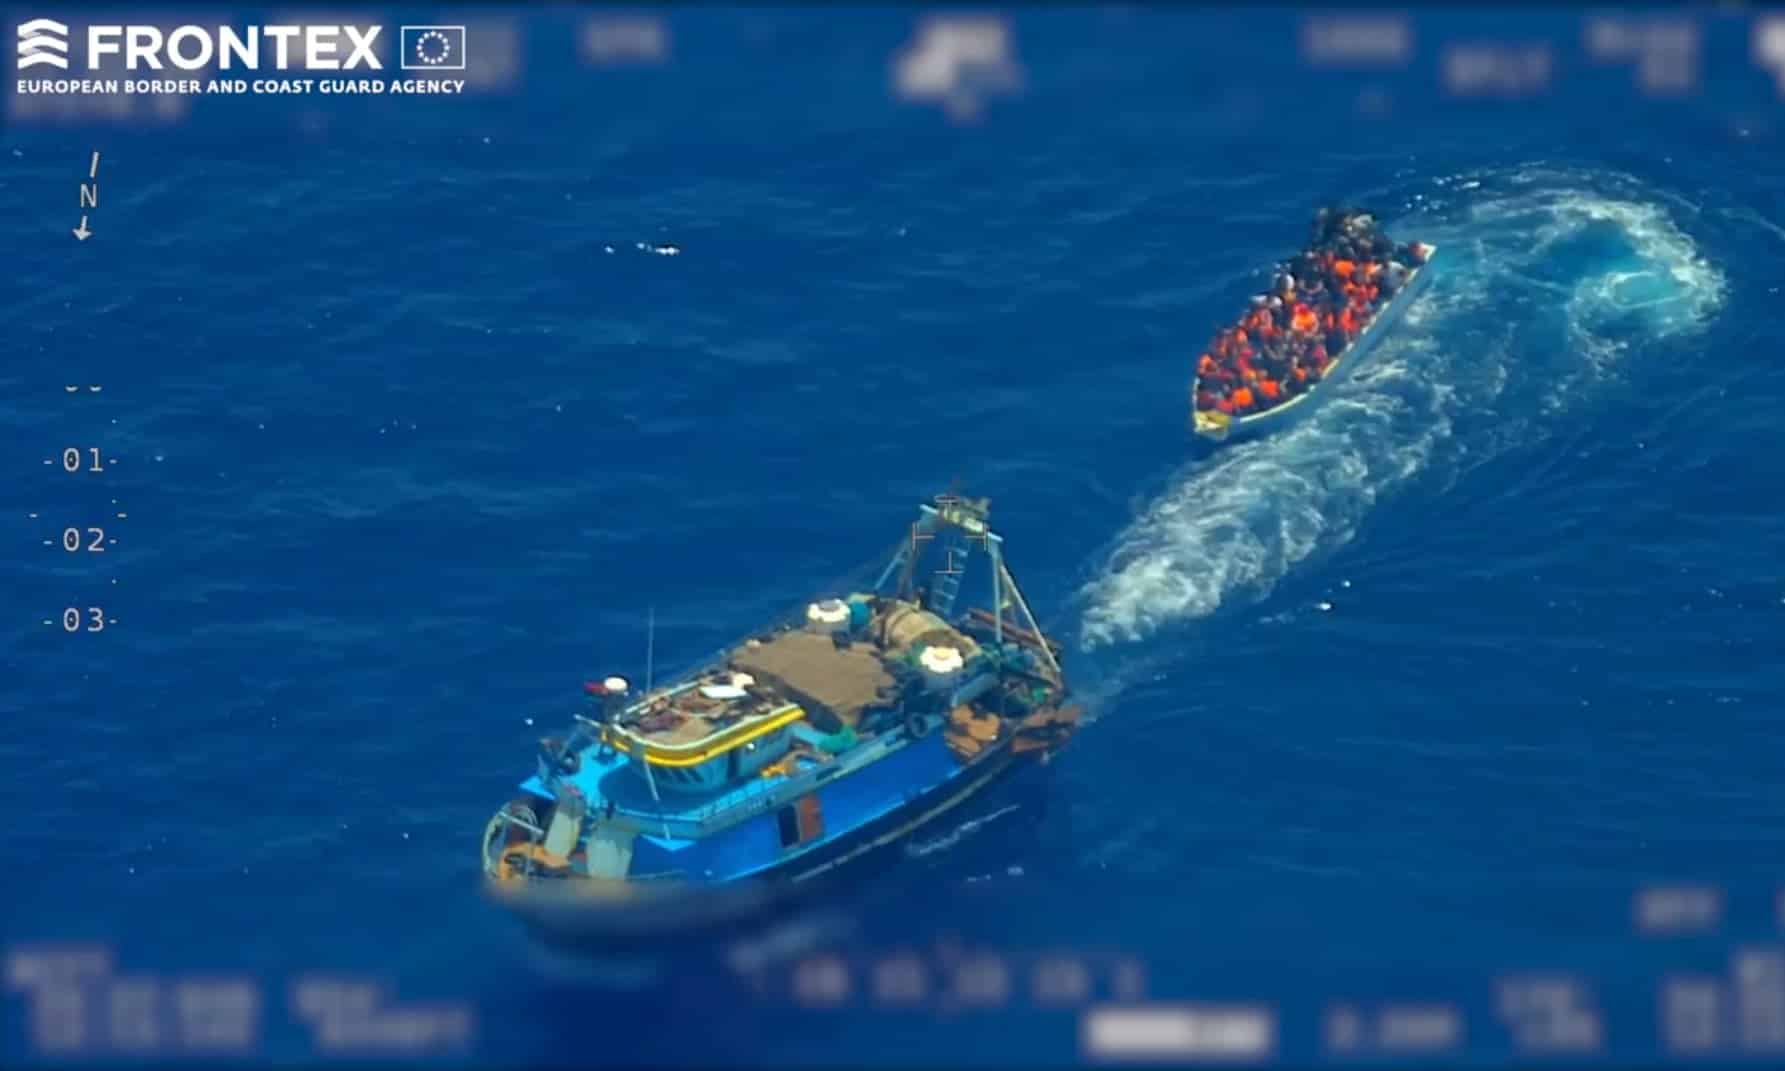 Frontex confessa: la missione viola i diritti umani